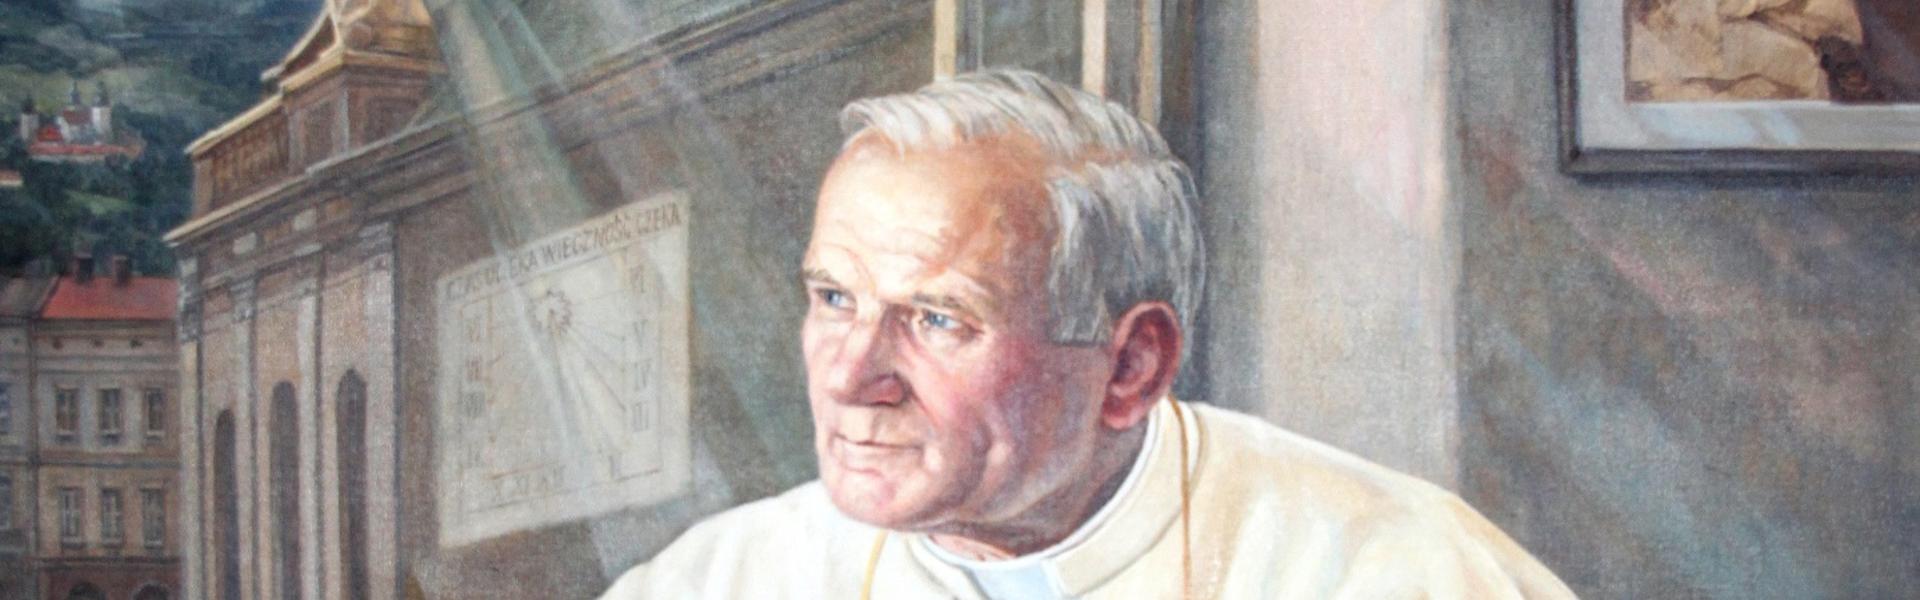 Obraz przedstawiajacy Jana Pawła II przy klęczniku, obok otwartego okna, przez które widoczna jest bazylika w Wadowicach